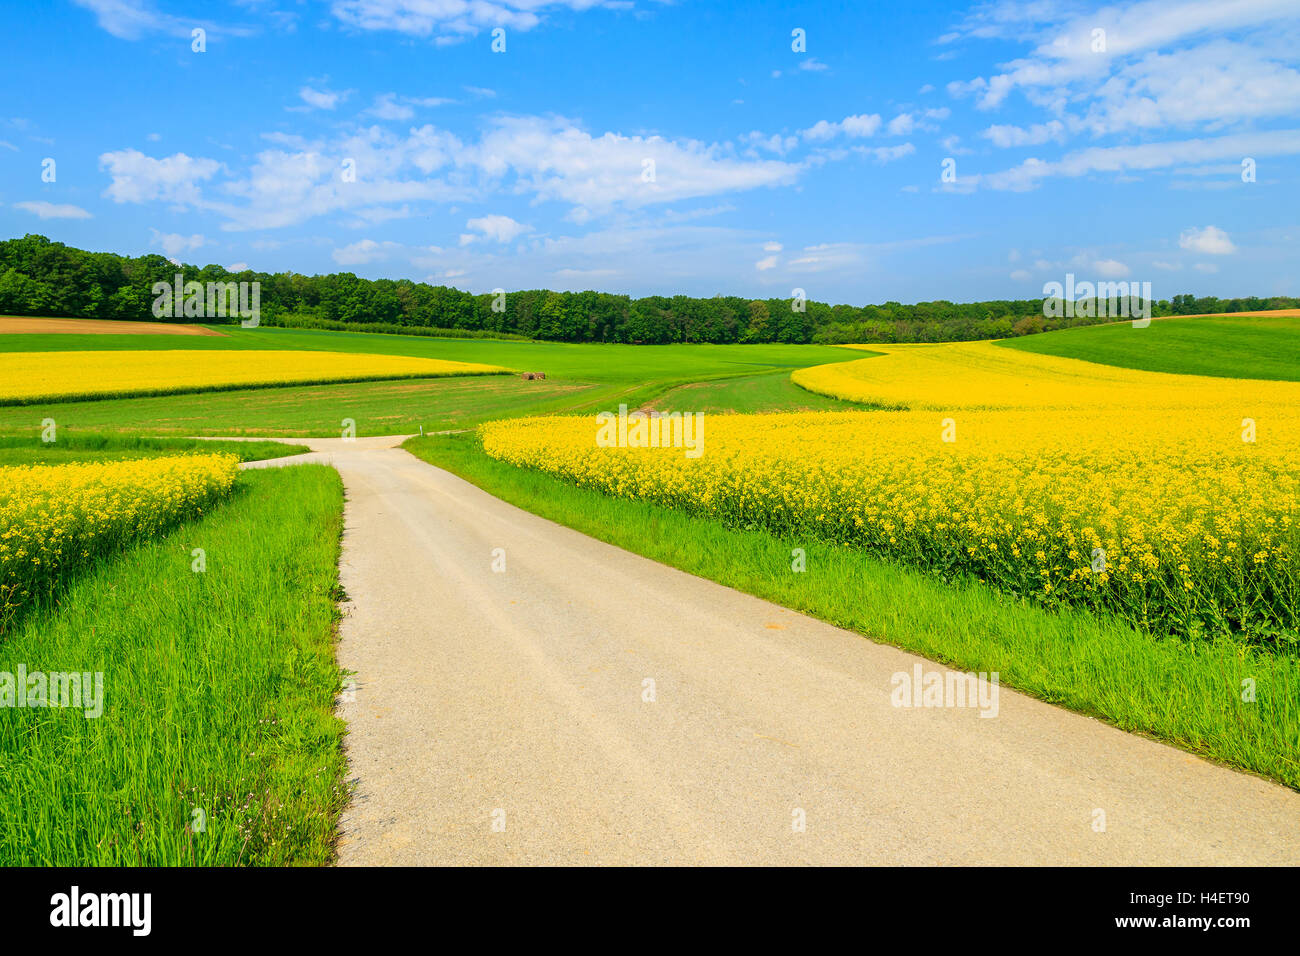 Landschaft-Straße entlang gelben Raps Blumenfeld und blauer Himmel, Burgenland, Süd-Österreich Stockfoto